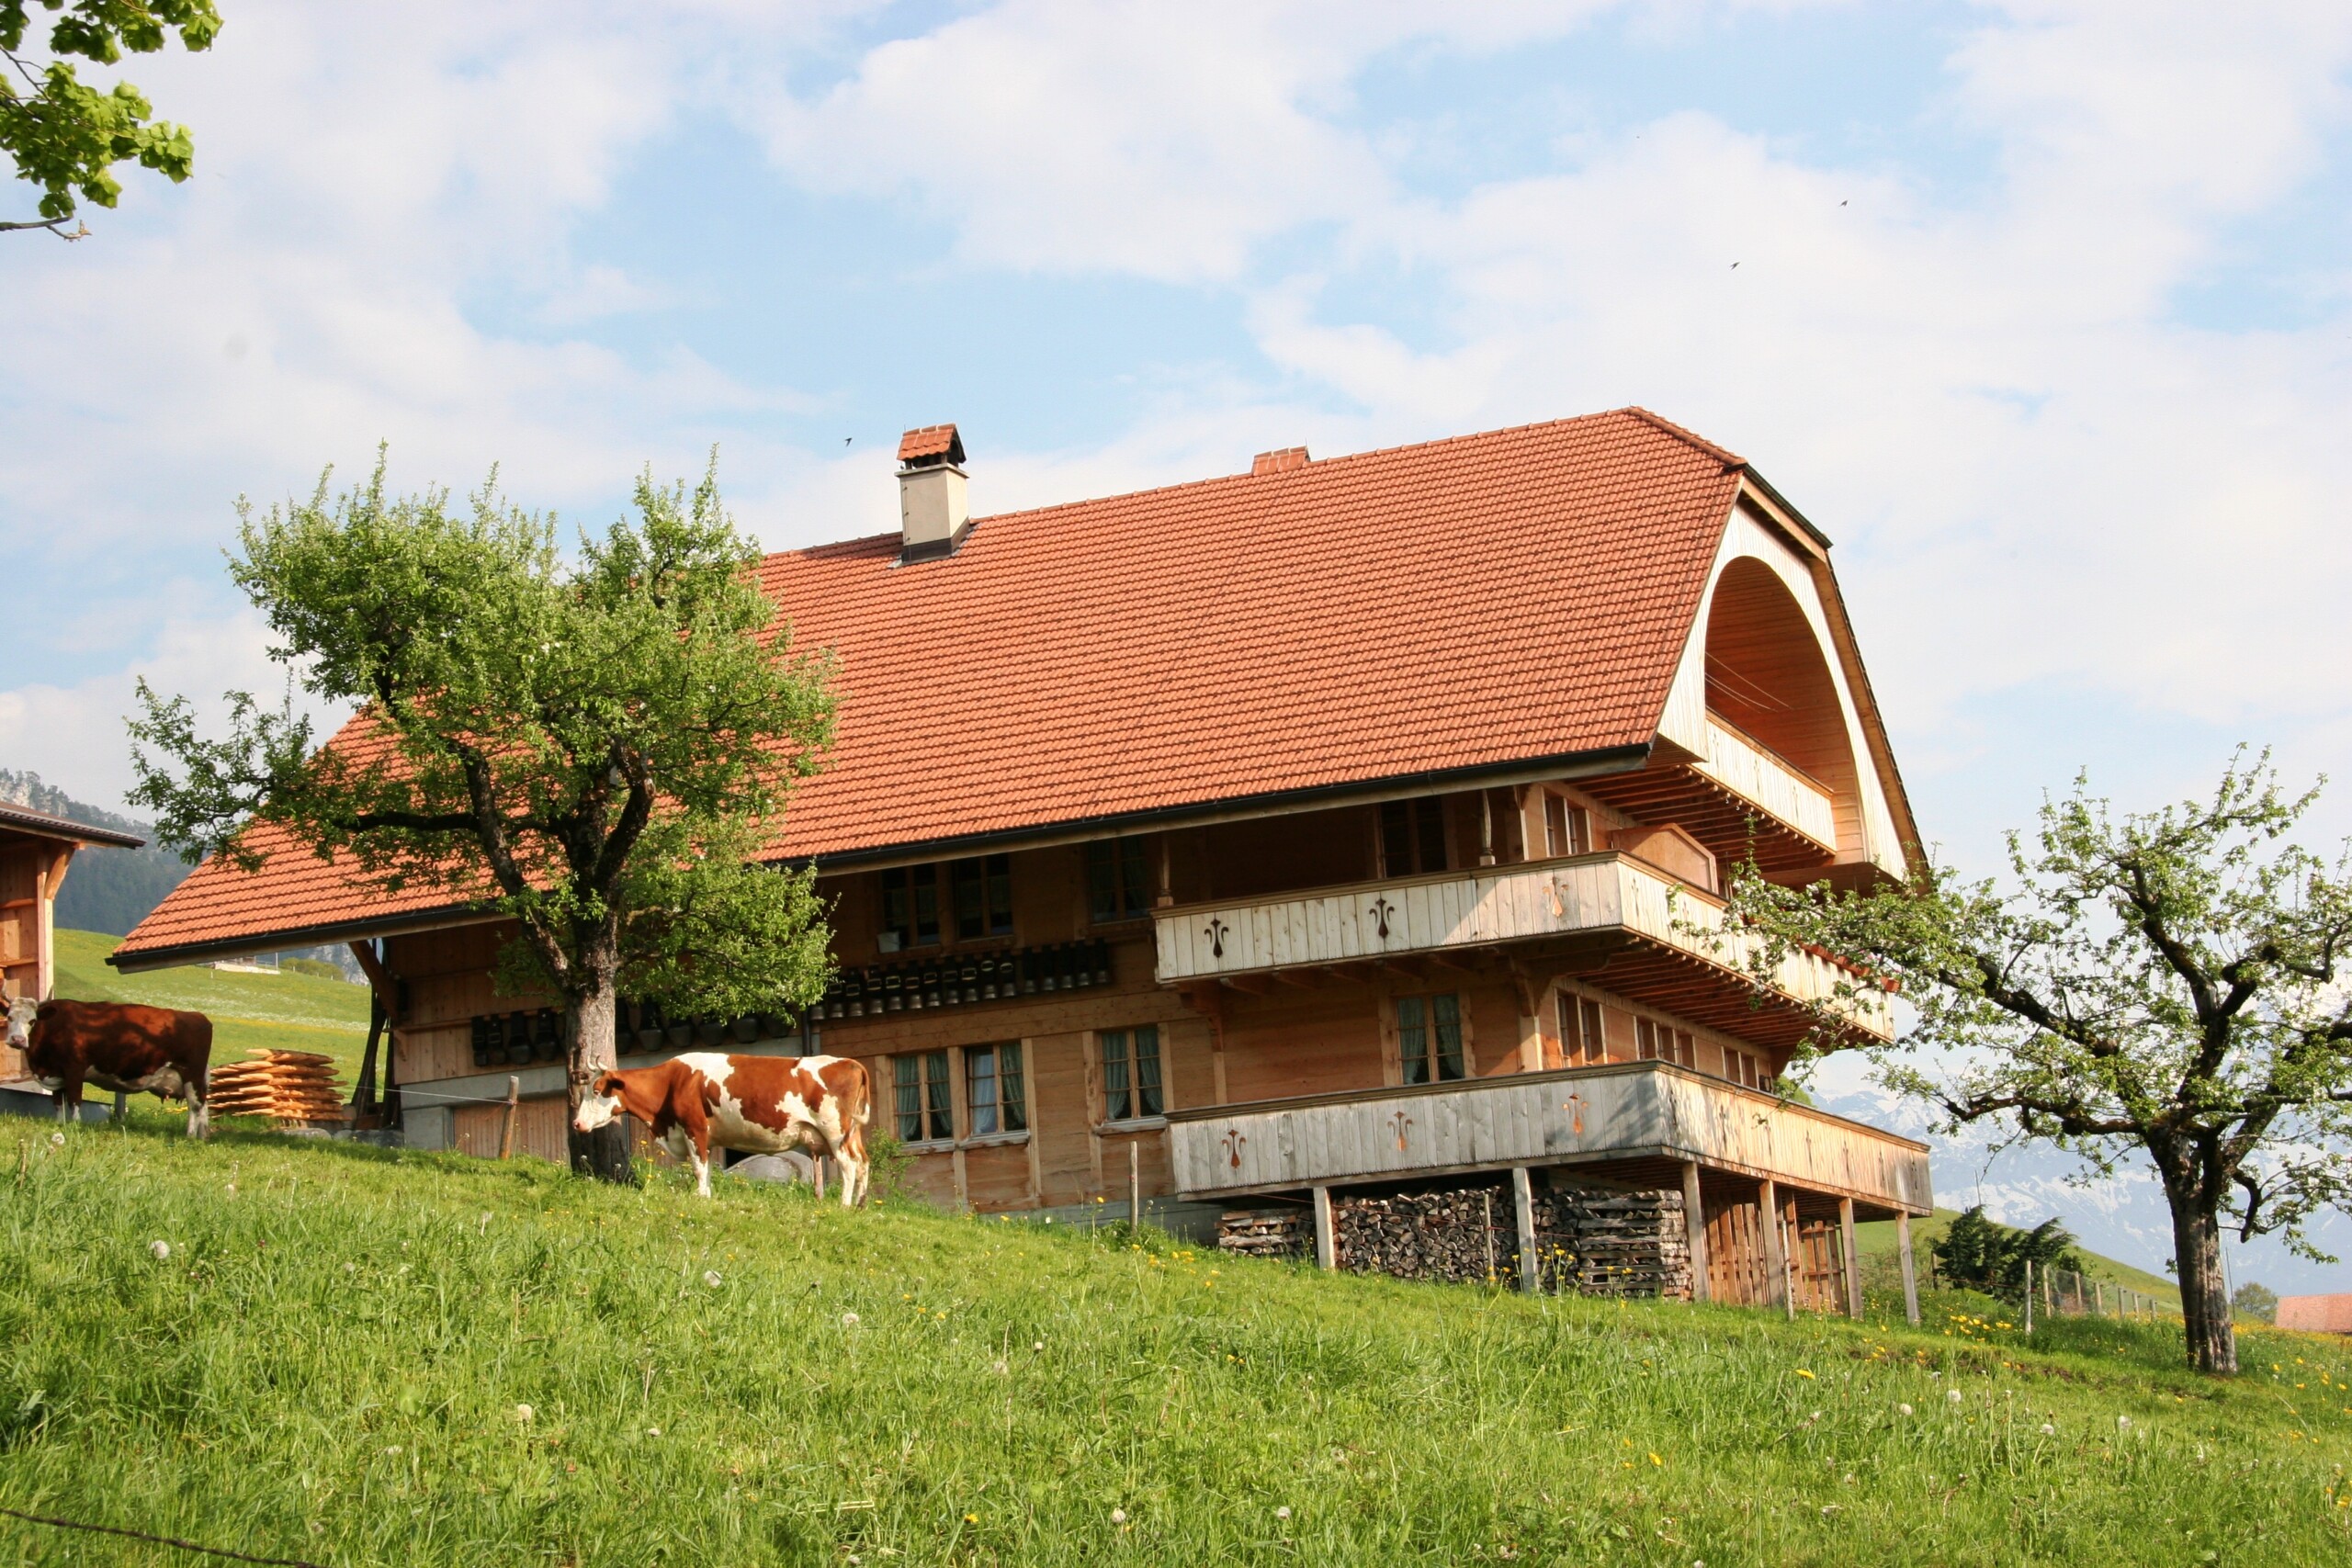 Baunerhaus mit Kuh